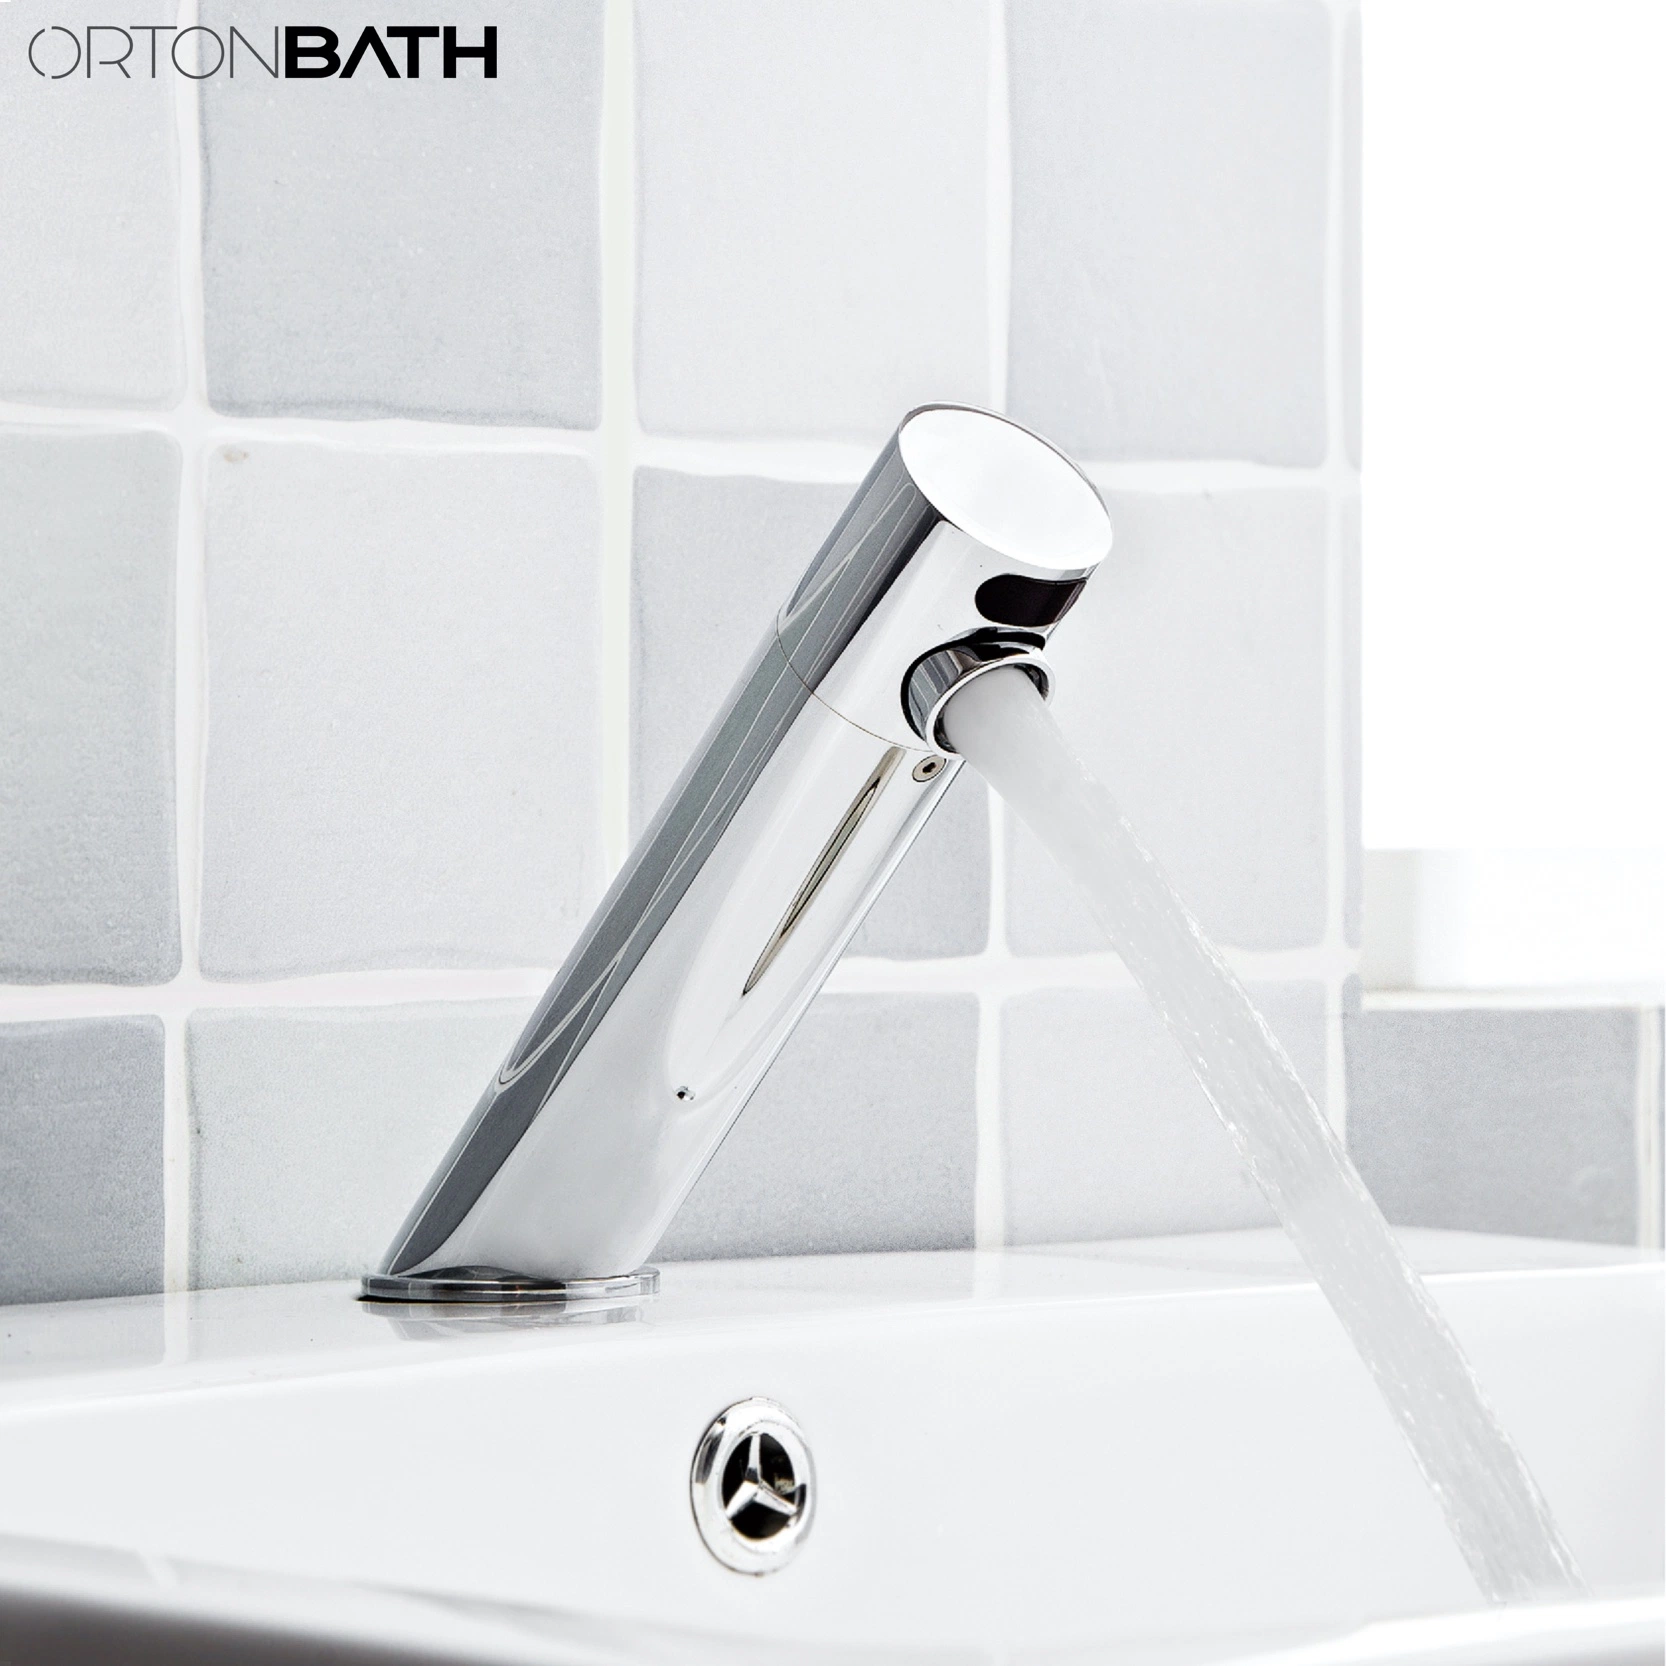 Ortonbath Touchless automática del sensor de mezclador de lavabo de la cuenca del cuarto de baño de latón cromado hizo toque el agua del grifo de agua de grifo de sensor de manos libres de toque para el proyecto público